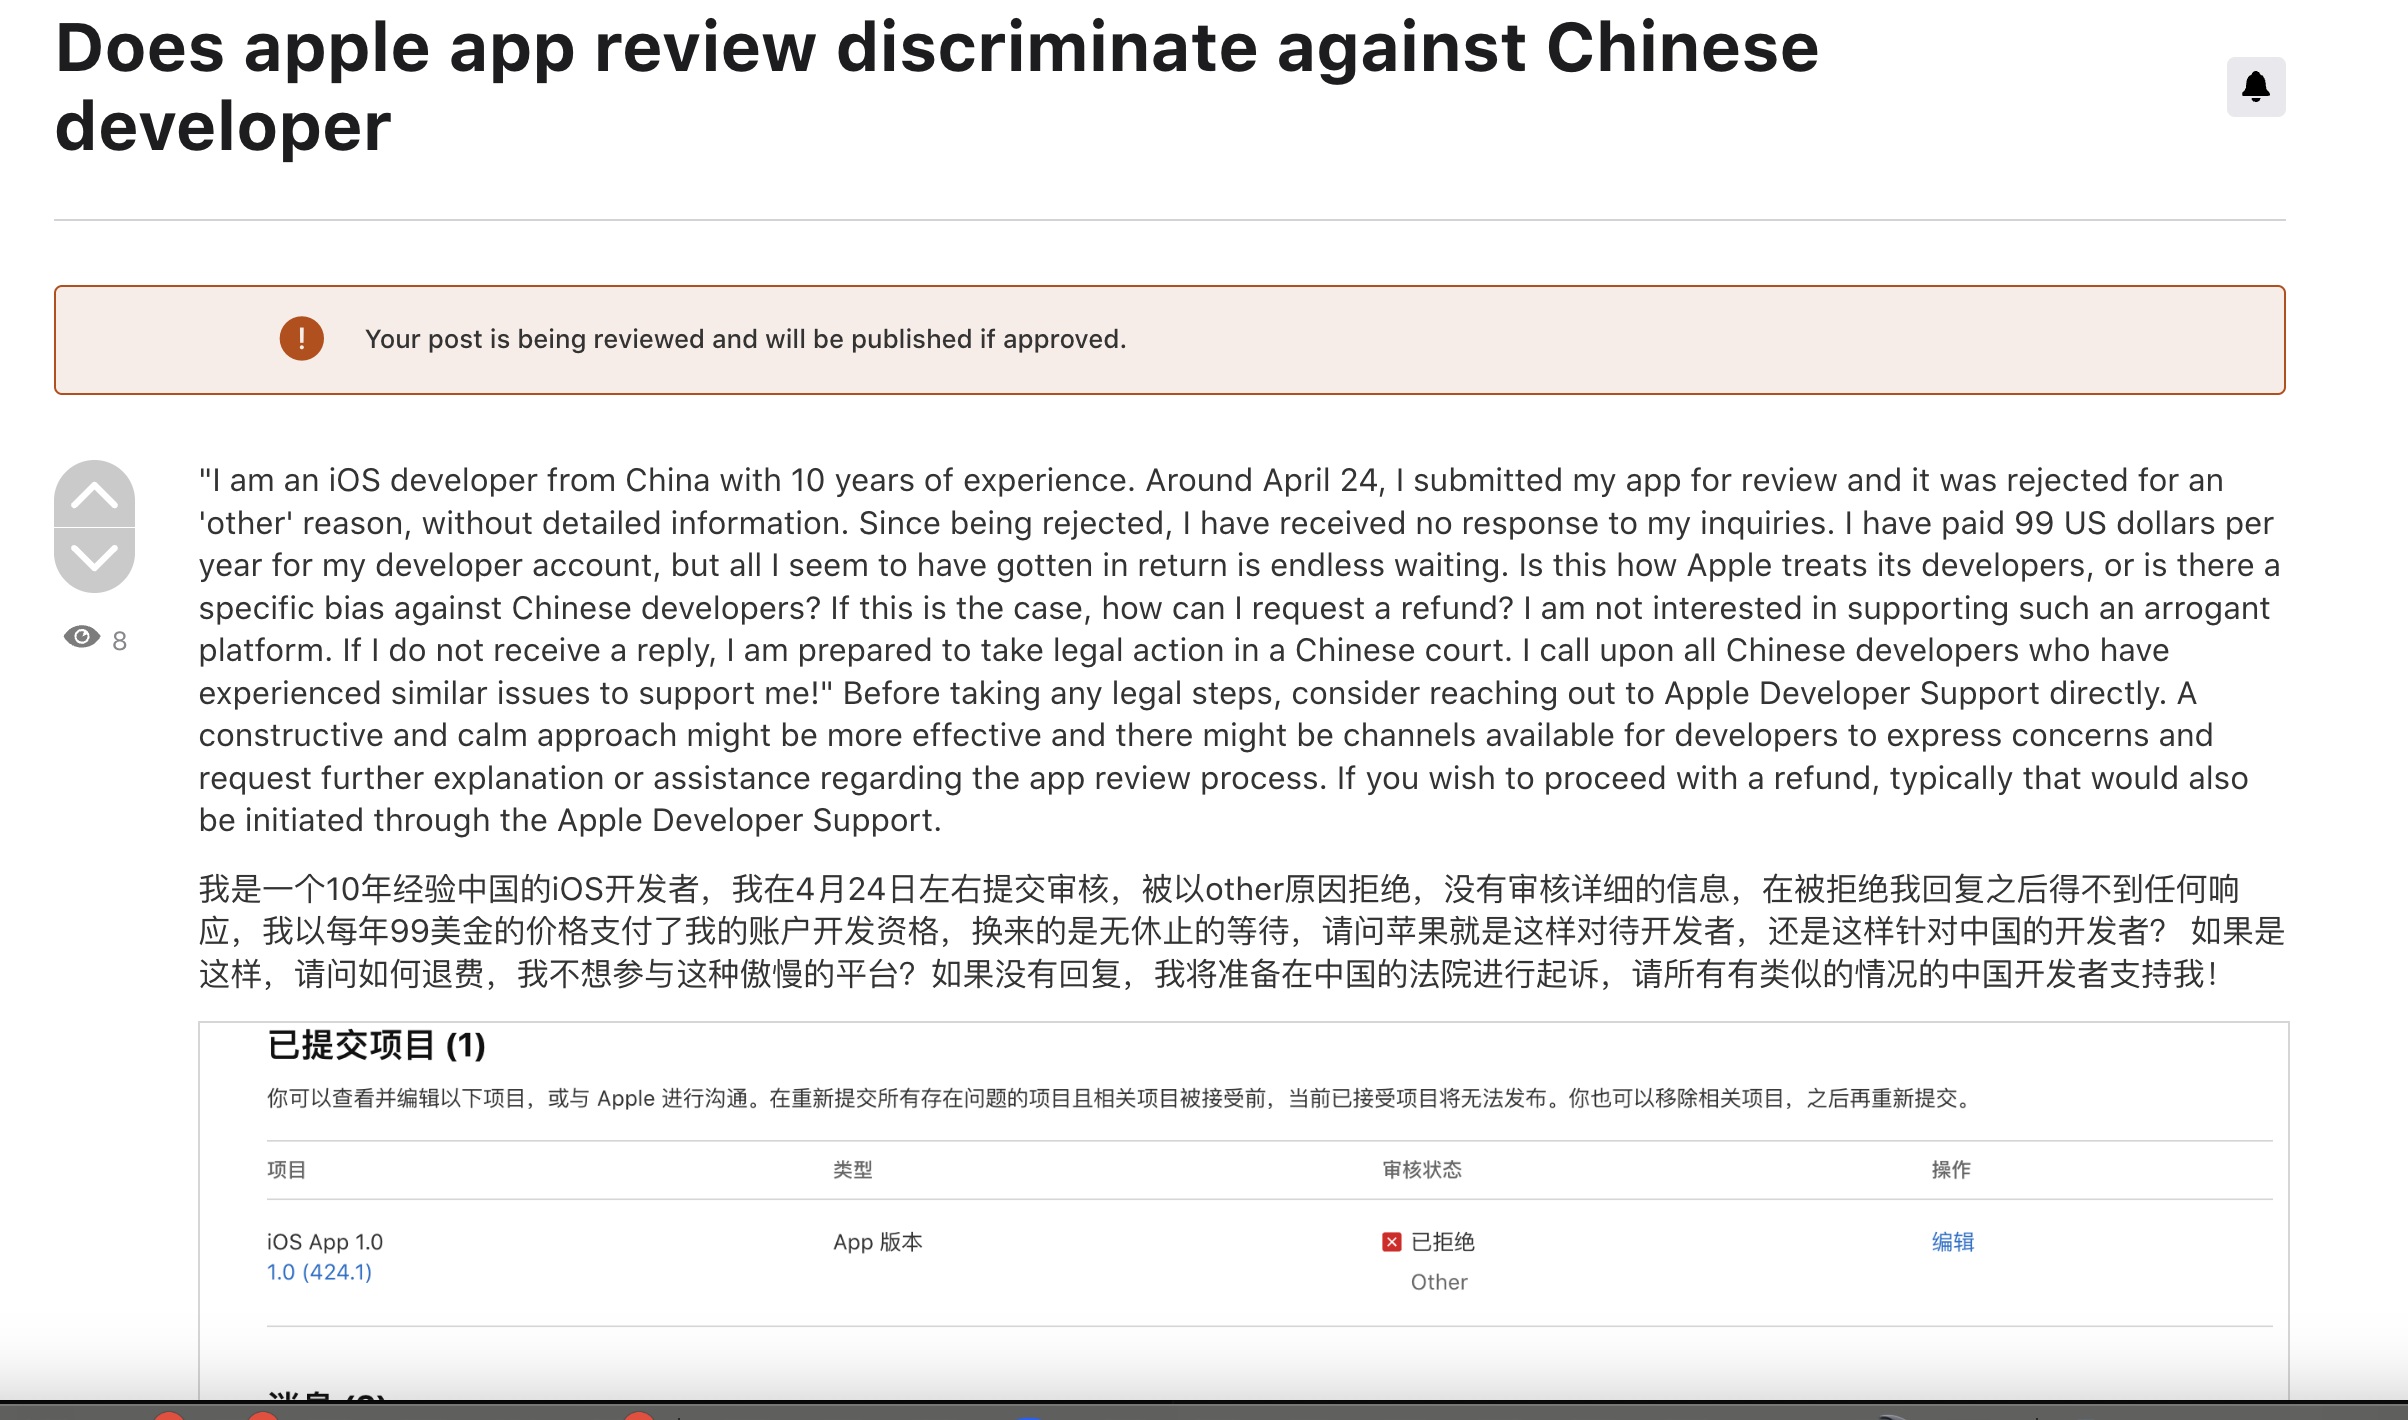 苹果开发者是否审核歧视中国开发者？傲慢无耻的苹果公司